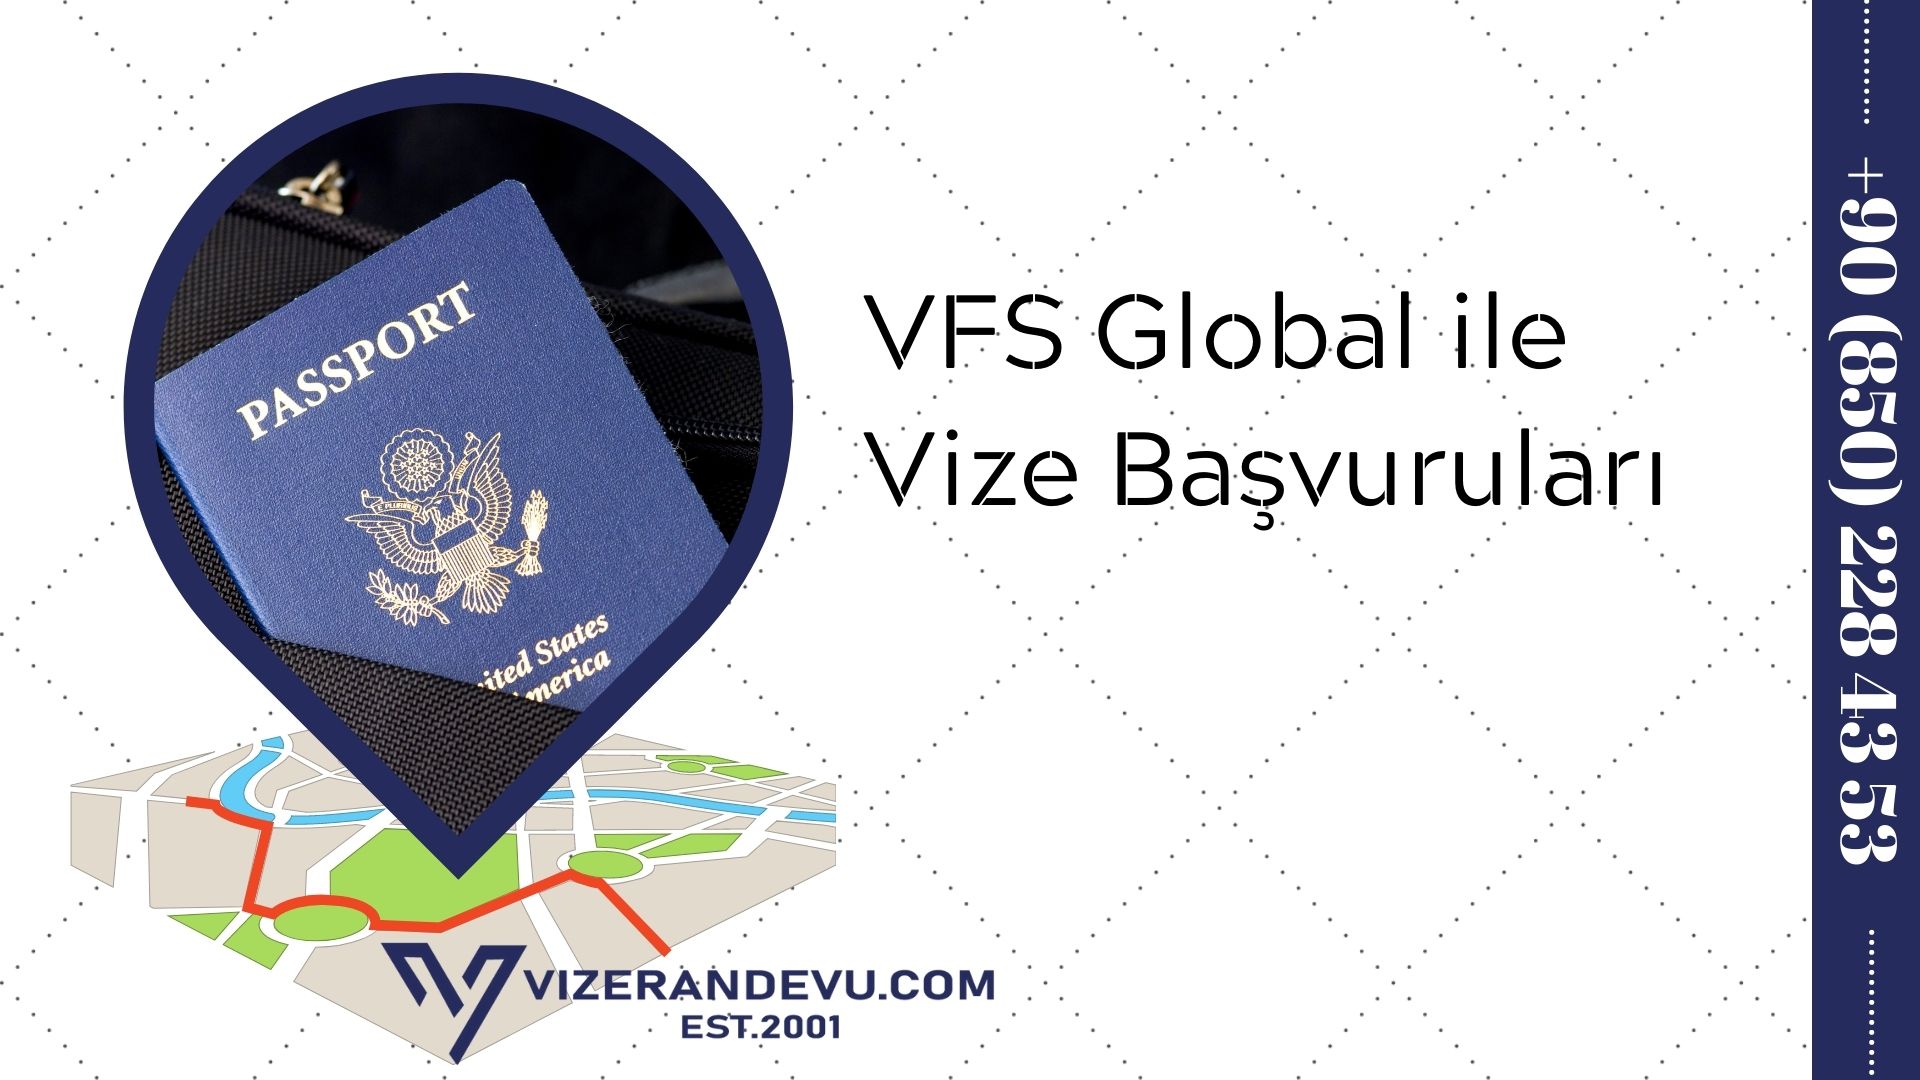 VFS Global ile Vize Başvuruları